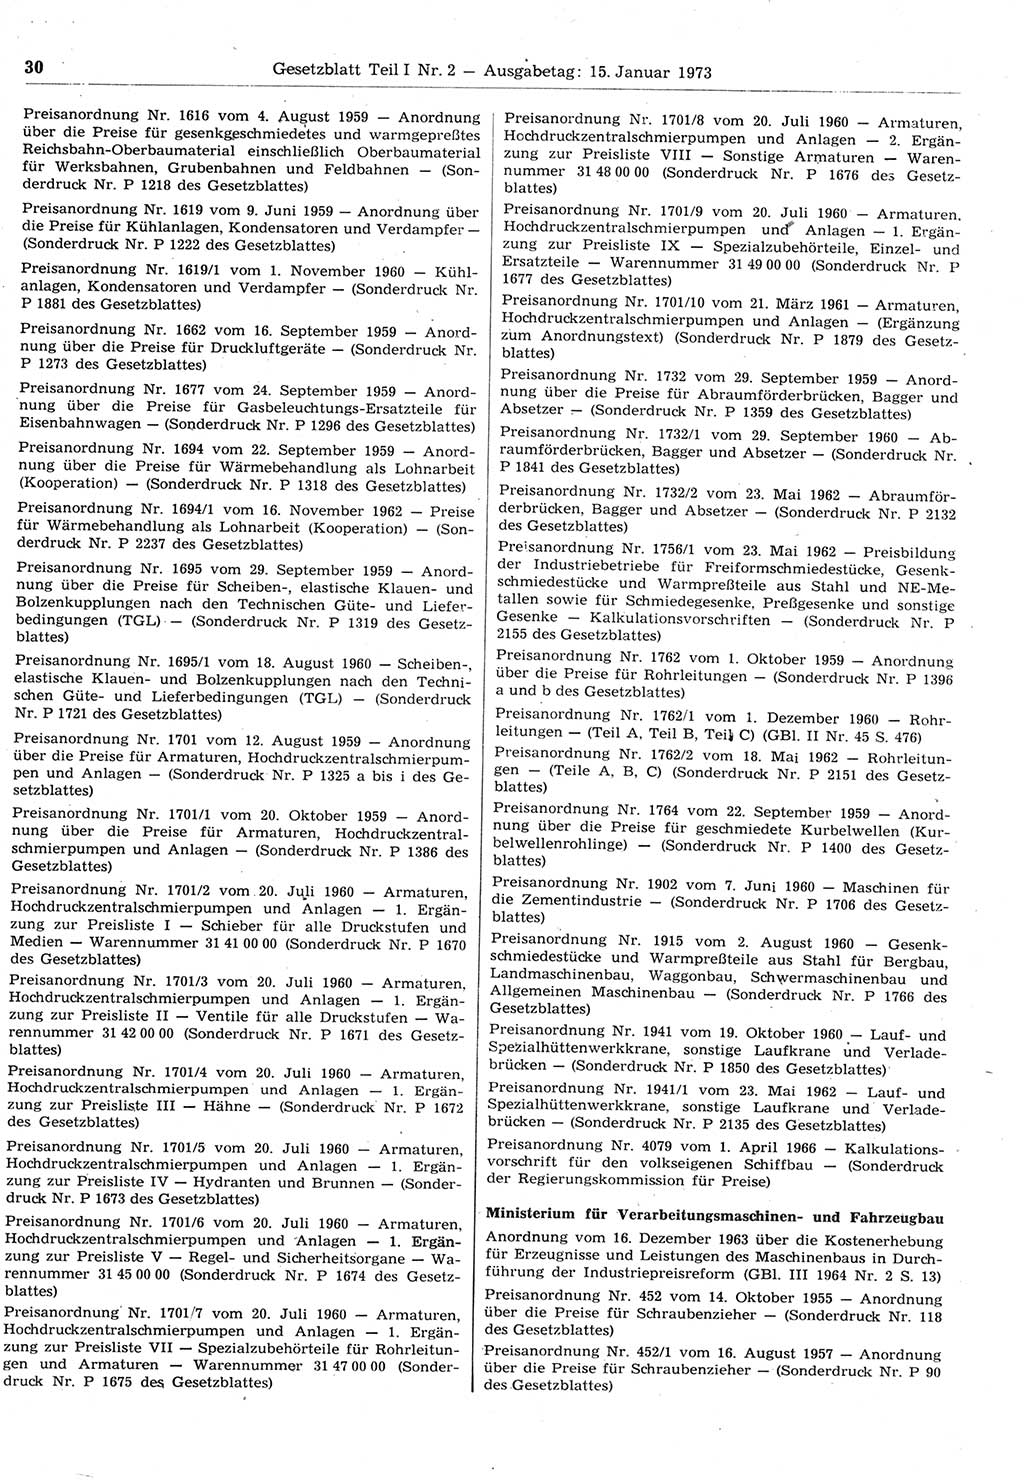 Gesetzblatt (GBl.) der Deutschen Demokratischen Republik (DDR) Teil Ⅰ 1973, Seite 30 (GBl. DDR Ⅰ 1973, S. 30)